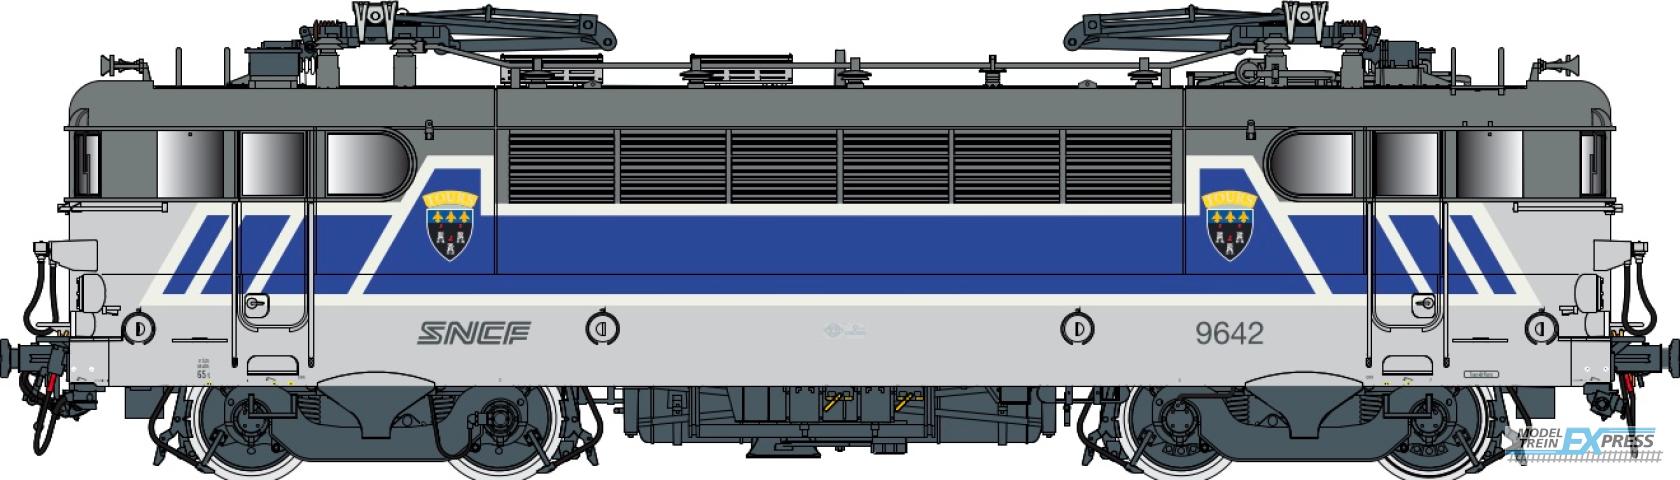 LS Models 10223 BB 9600, grijs/blauw/wit/oranje, Centre, noedels logo  /  Ep. V  /  SNCF  /  HO  /  DC  /  1 P.